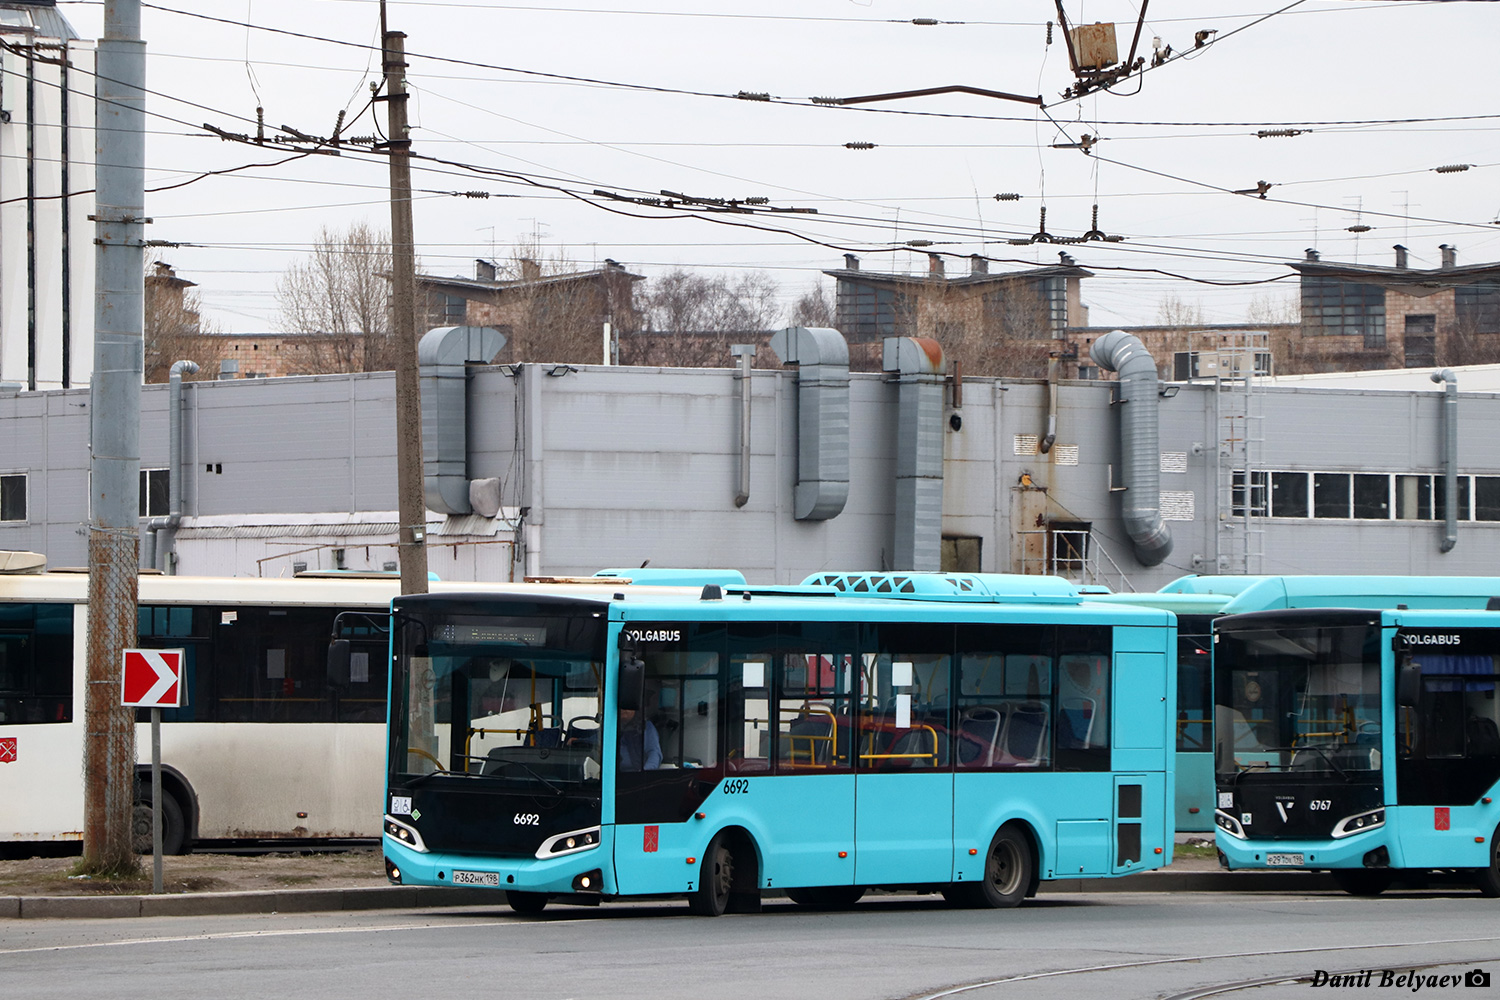 Sanktpēterburga, Volgabus-4298.G4 (LNG) № 6692